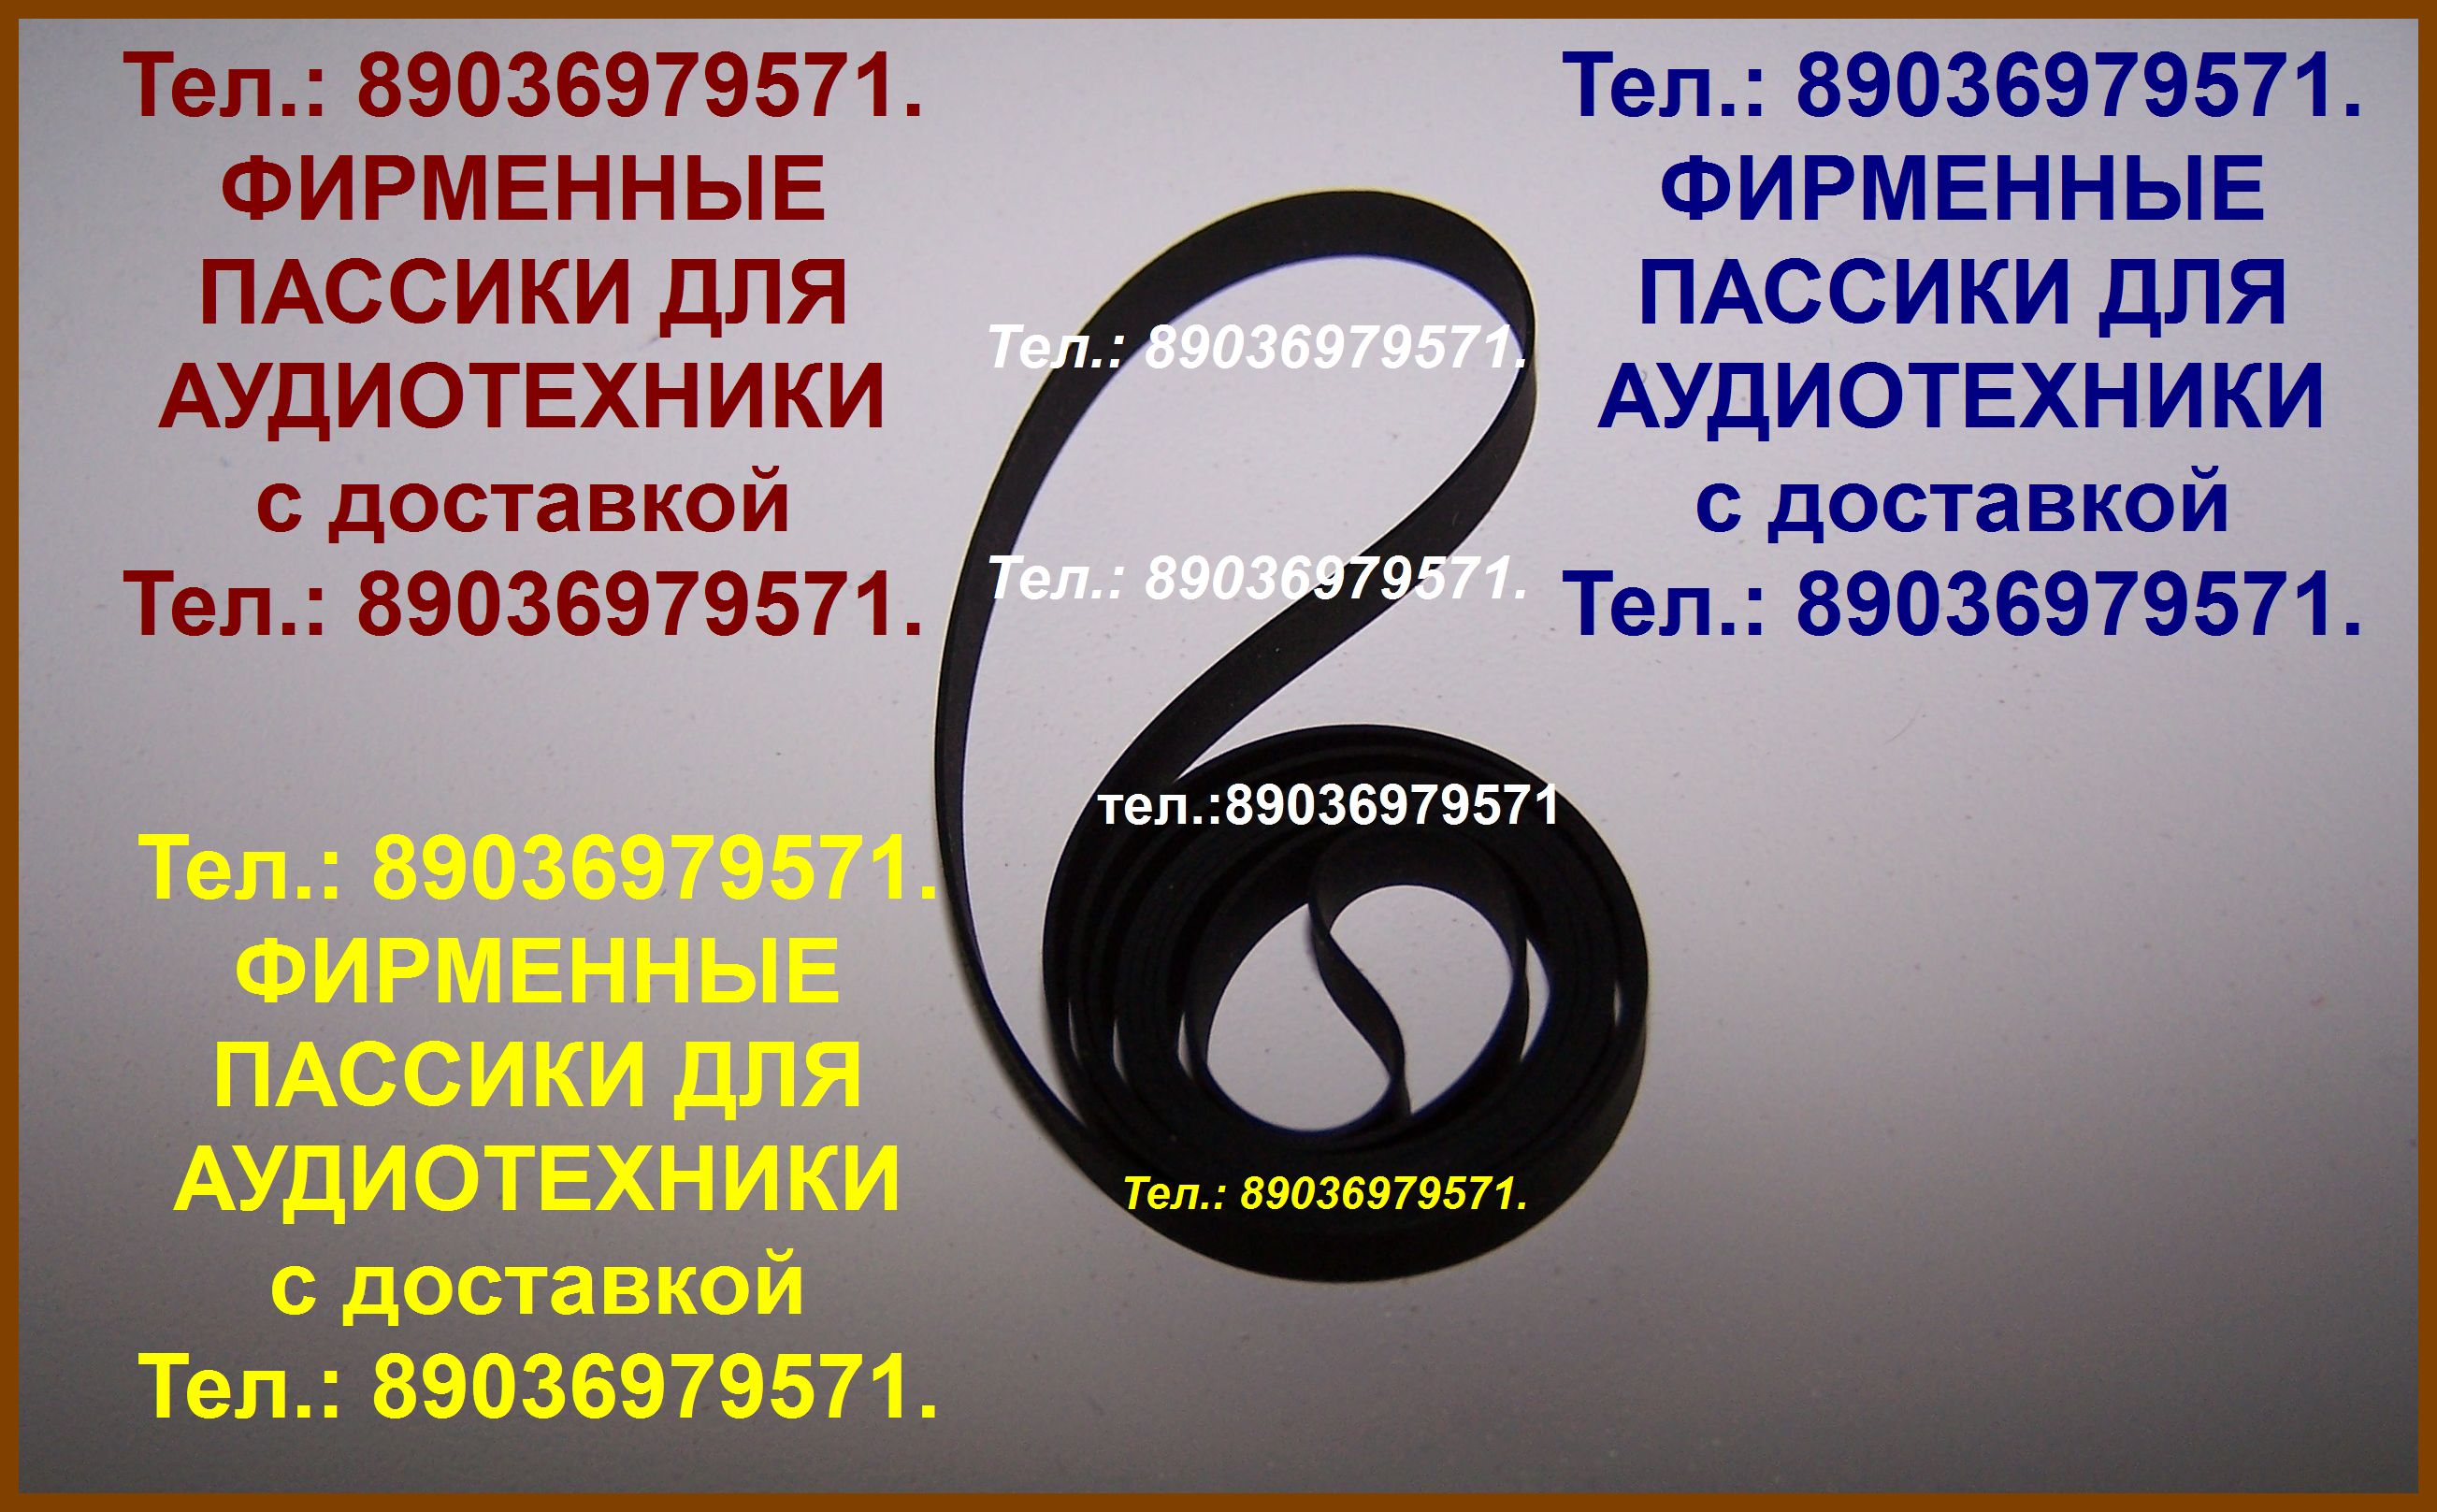 пассики для Pioneer PL-990 фирменные ремни для аудио Пионер пассики для Pioneer PL-990 фирменные ремни для аудио Пионер в городе Москва, фото 1, Московская область